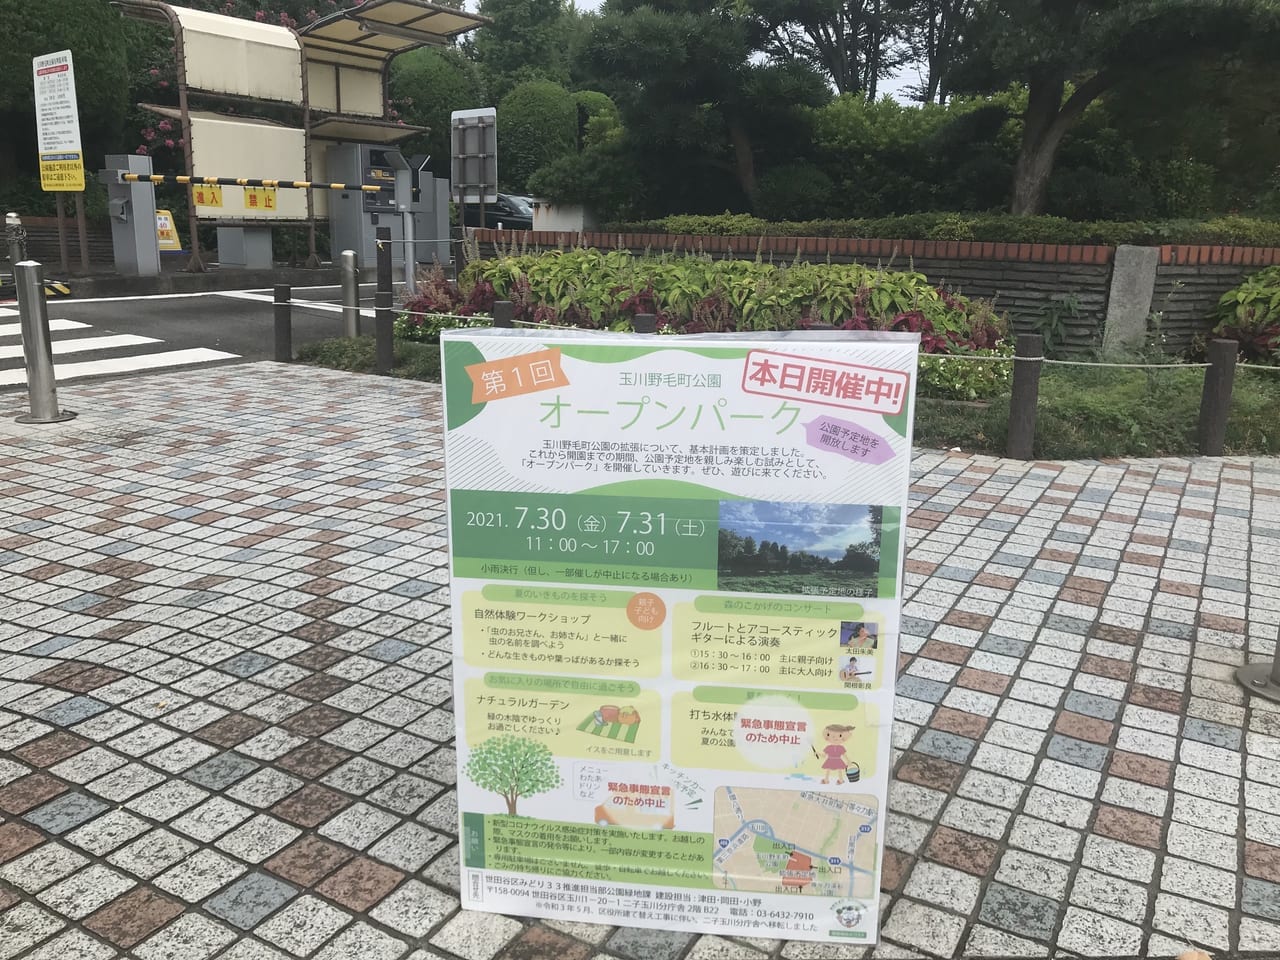 世田谷区玉川野毛町公園第1回オープンパークが2021年7月30日、31日に開催されました！